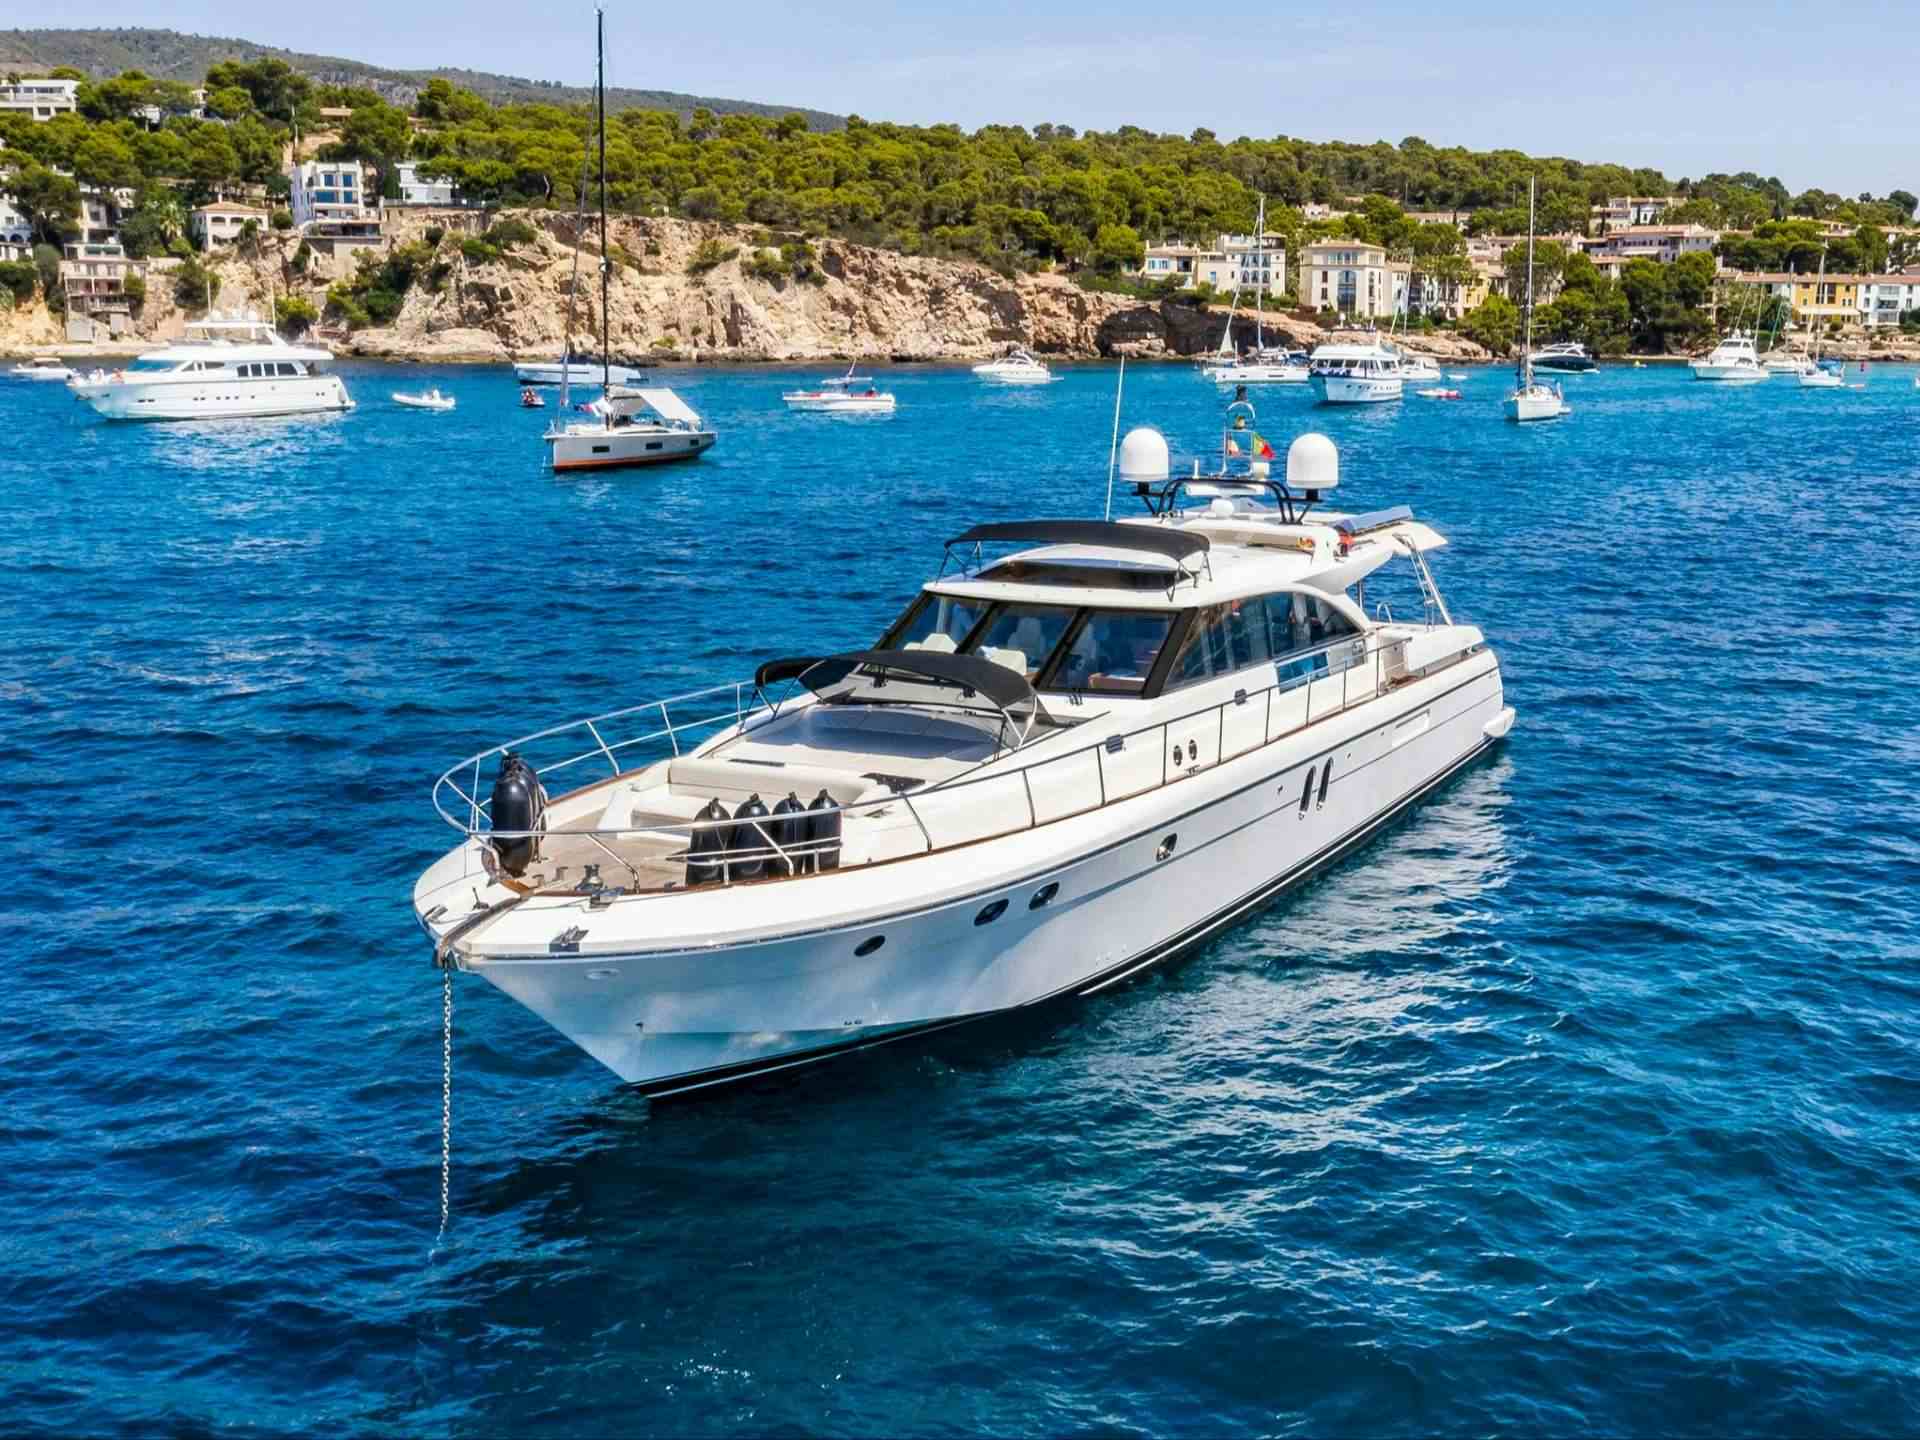 PARODIA II - Yacht Charter Calanova & Boat hire in W. Med -Naples/Sicily, W. Med -Riviera/Cors/Sard., W. Med - Spain/Balearics 1